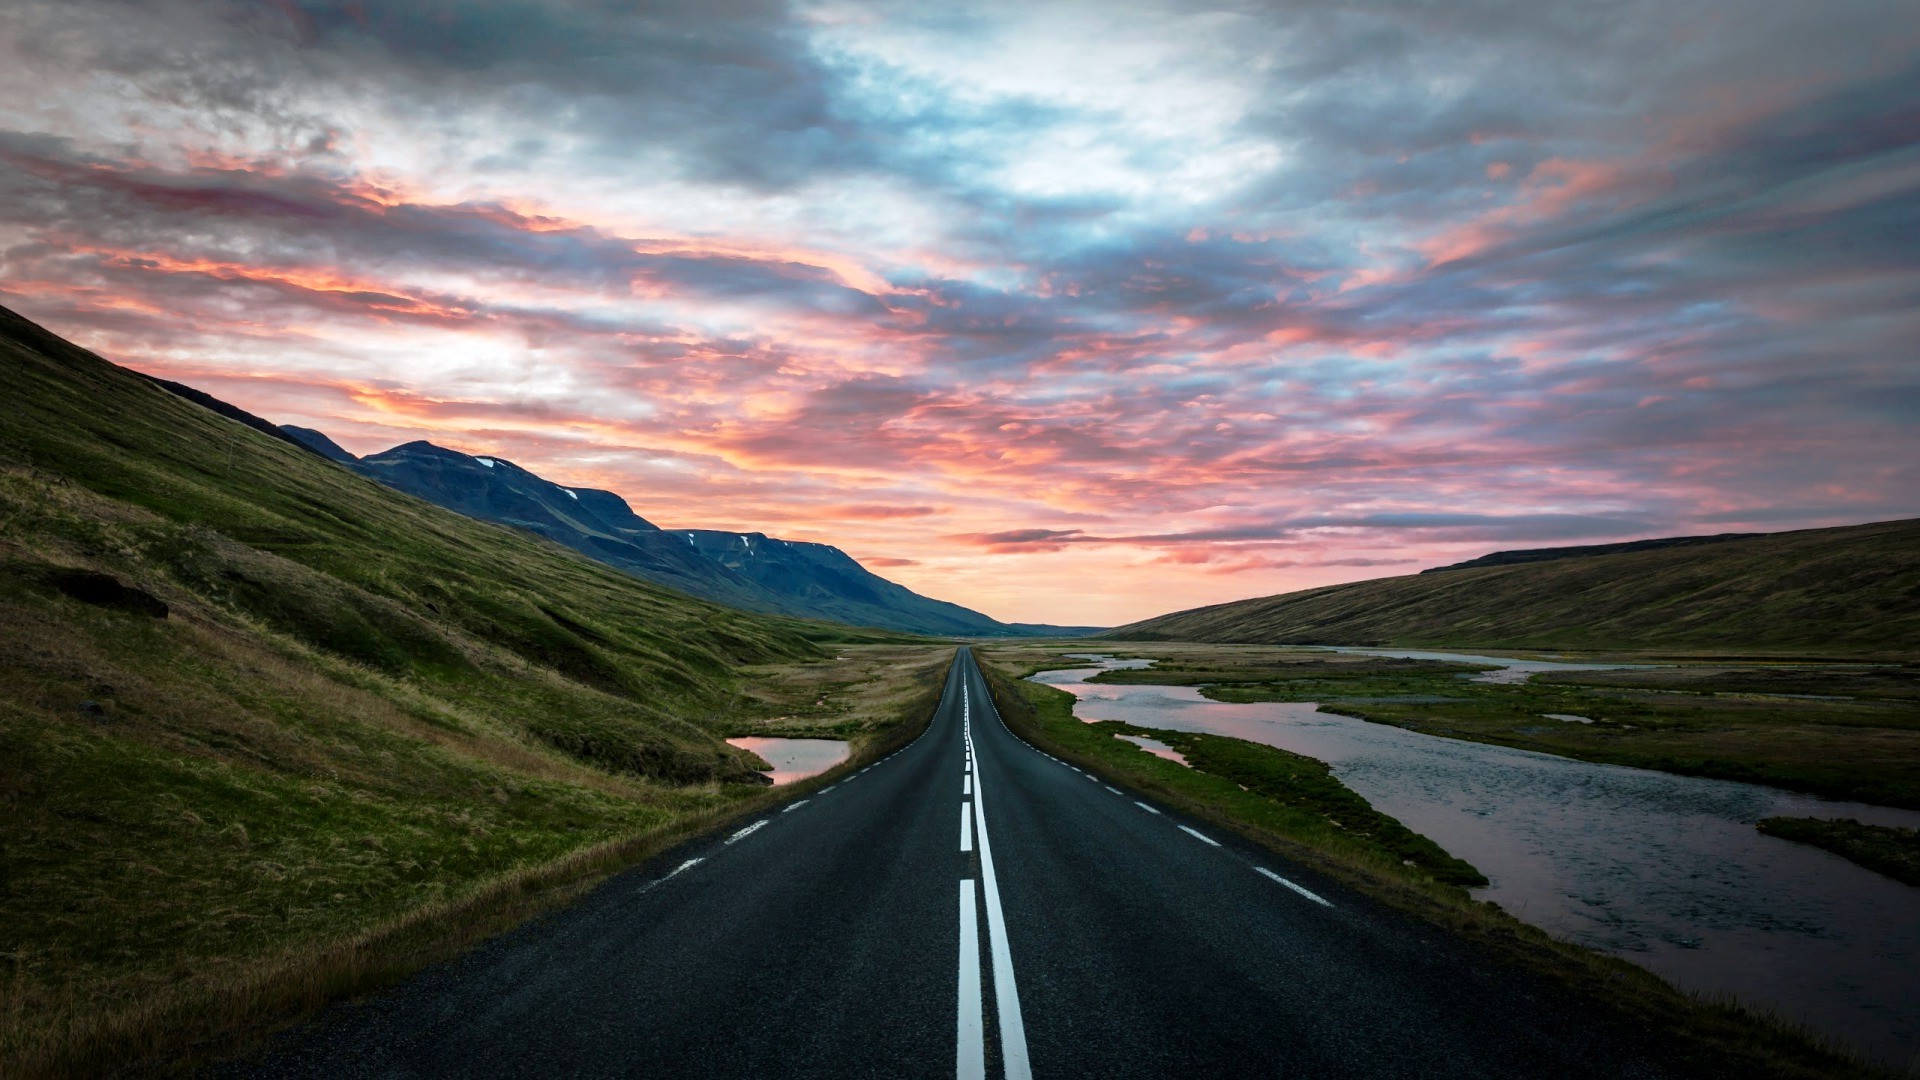 Với hình nền Sunset Iceland, cảm giác của bạn sẽ được đưa vào bầu không khí đầy màu sắc của hoàng hôn trên bờ biển Iceland. Sự kết hợp hài hòa giữa sắc đỏ, cam, vàng trên nền những ngọn núi tuyết phủ sẽ khiến bạn cảm thấy rất thư thái và tươi vui.